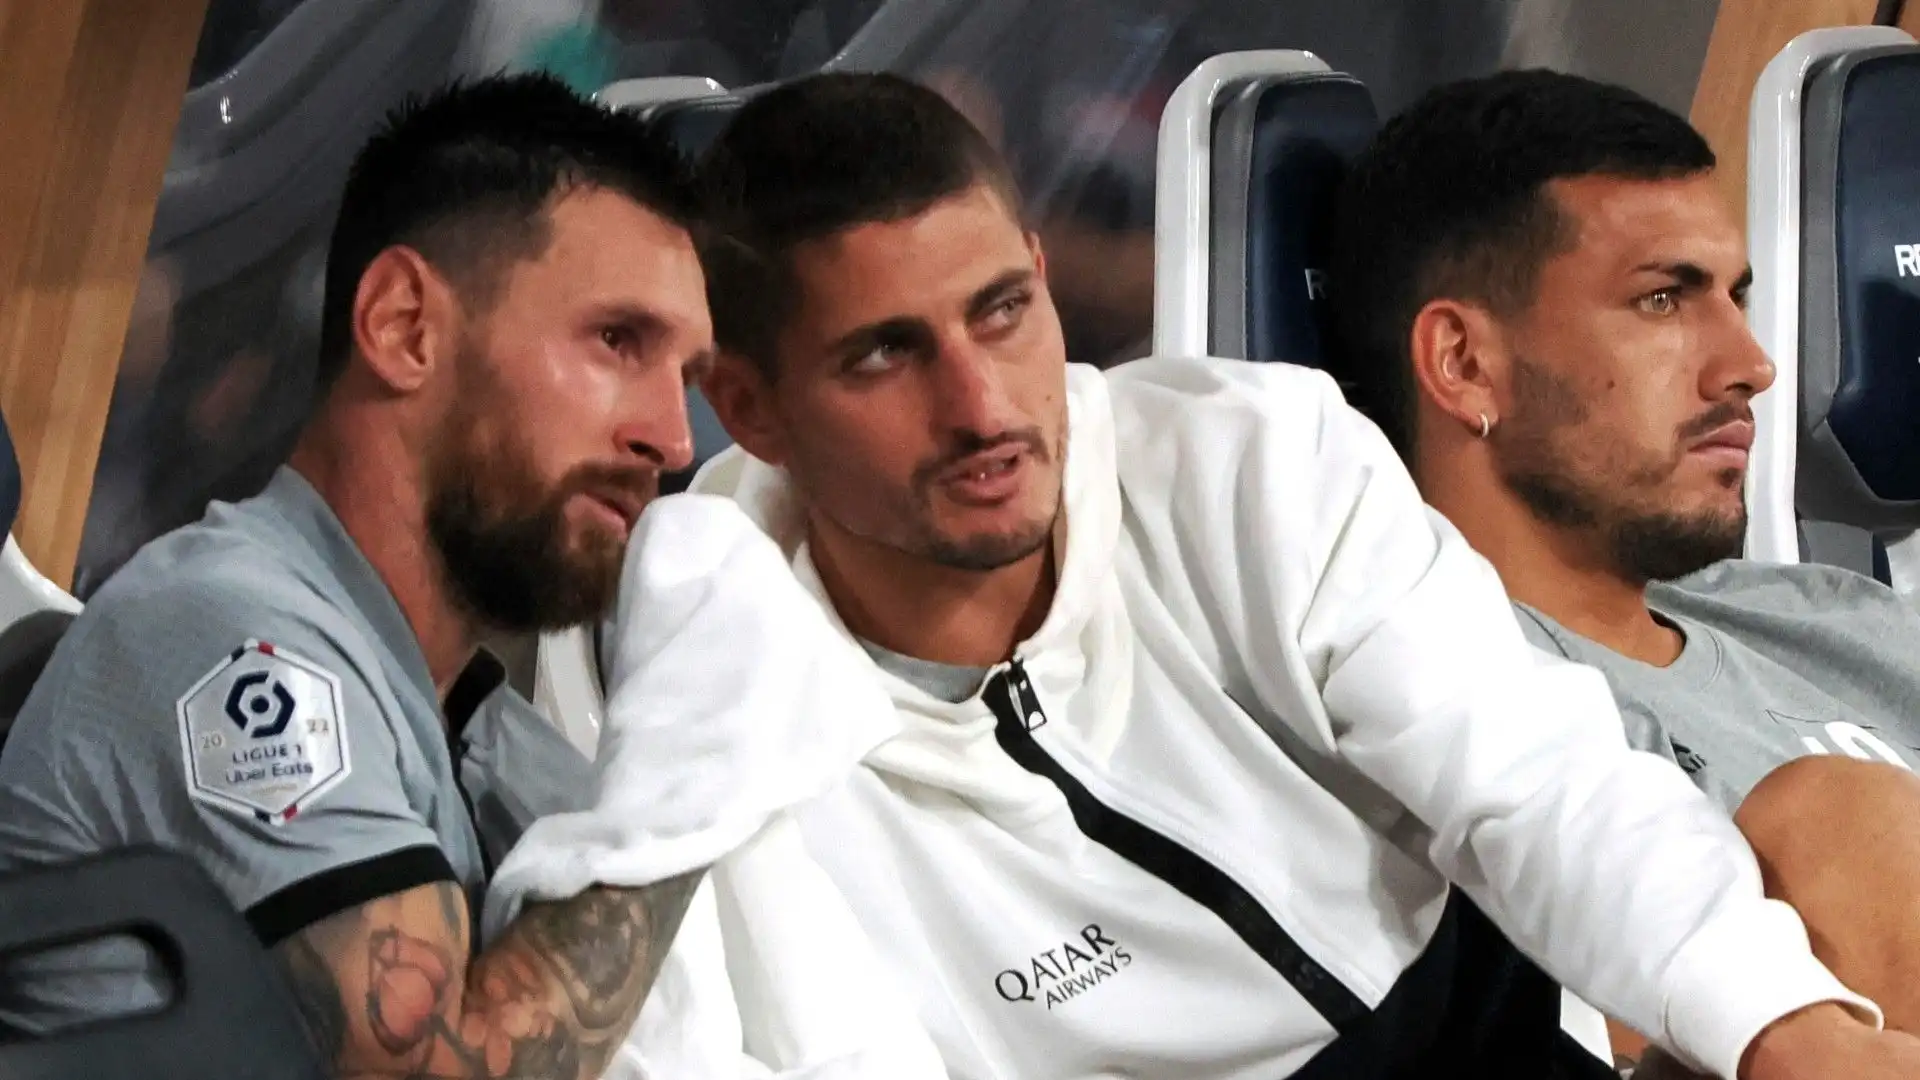 Una volta in panchina, Messi ha scambiato quattro chiacchiere con Marco Verratti